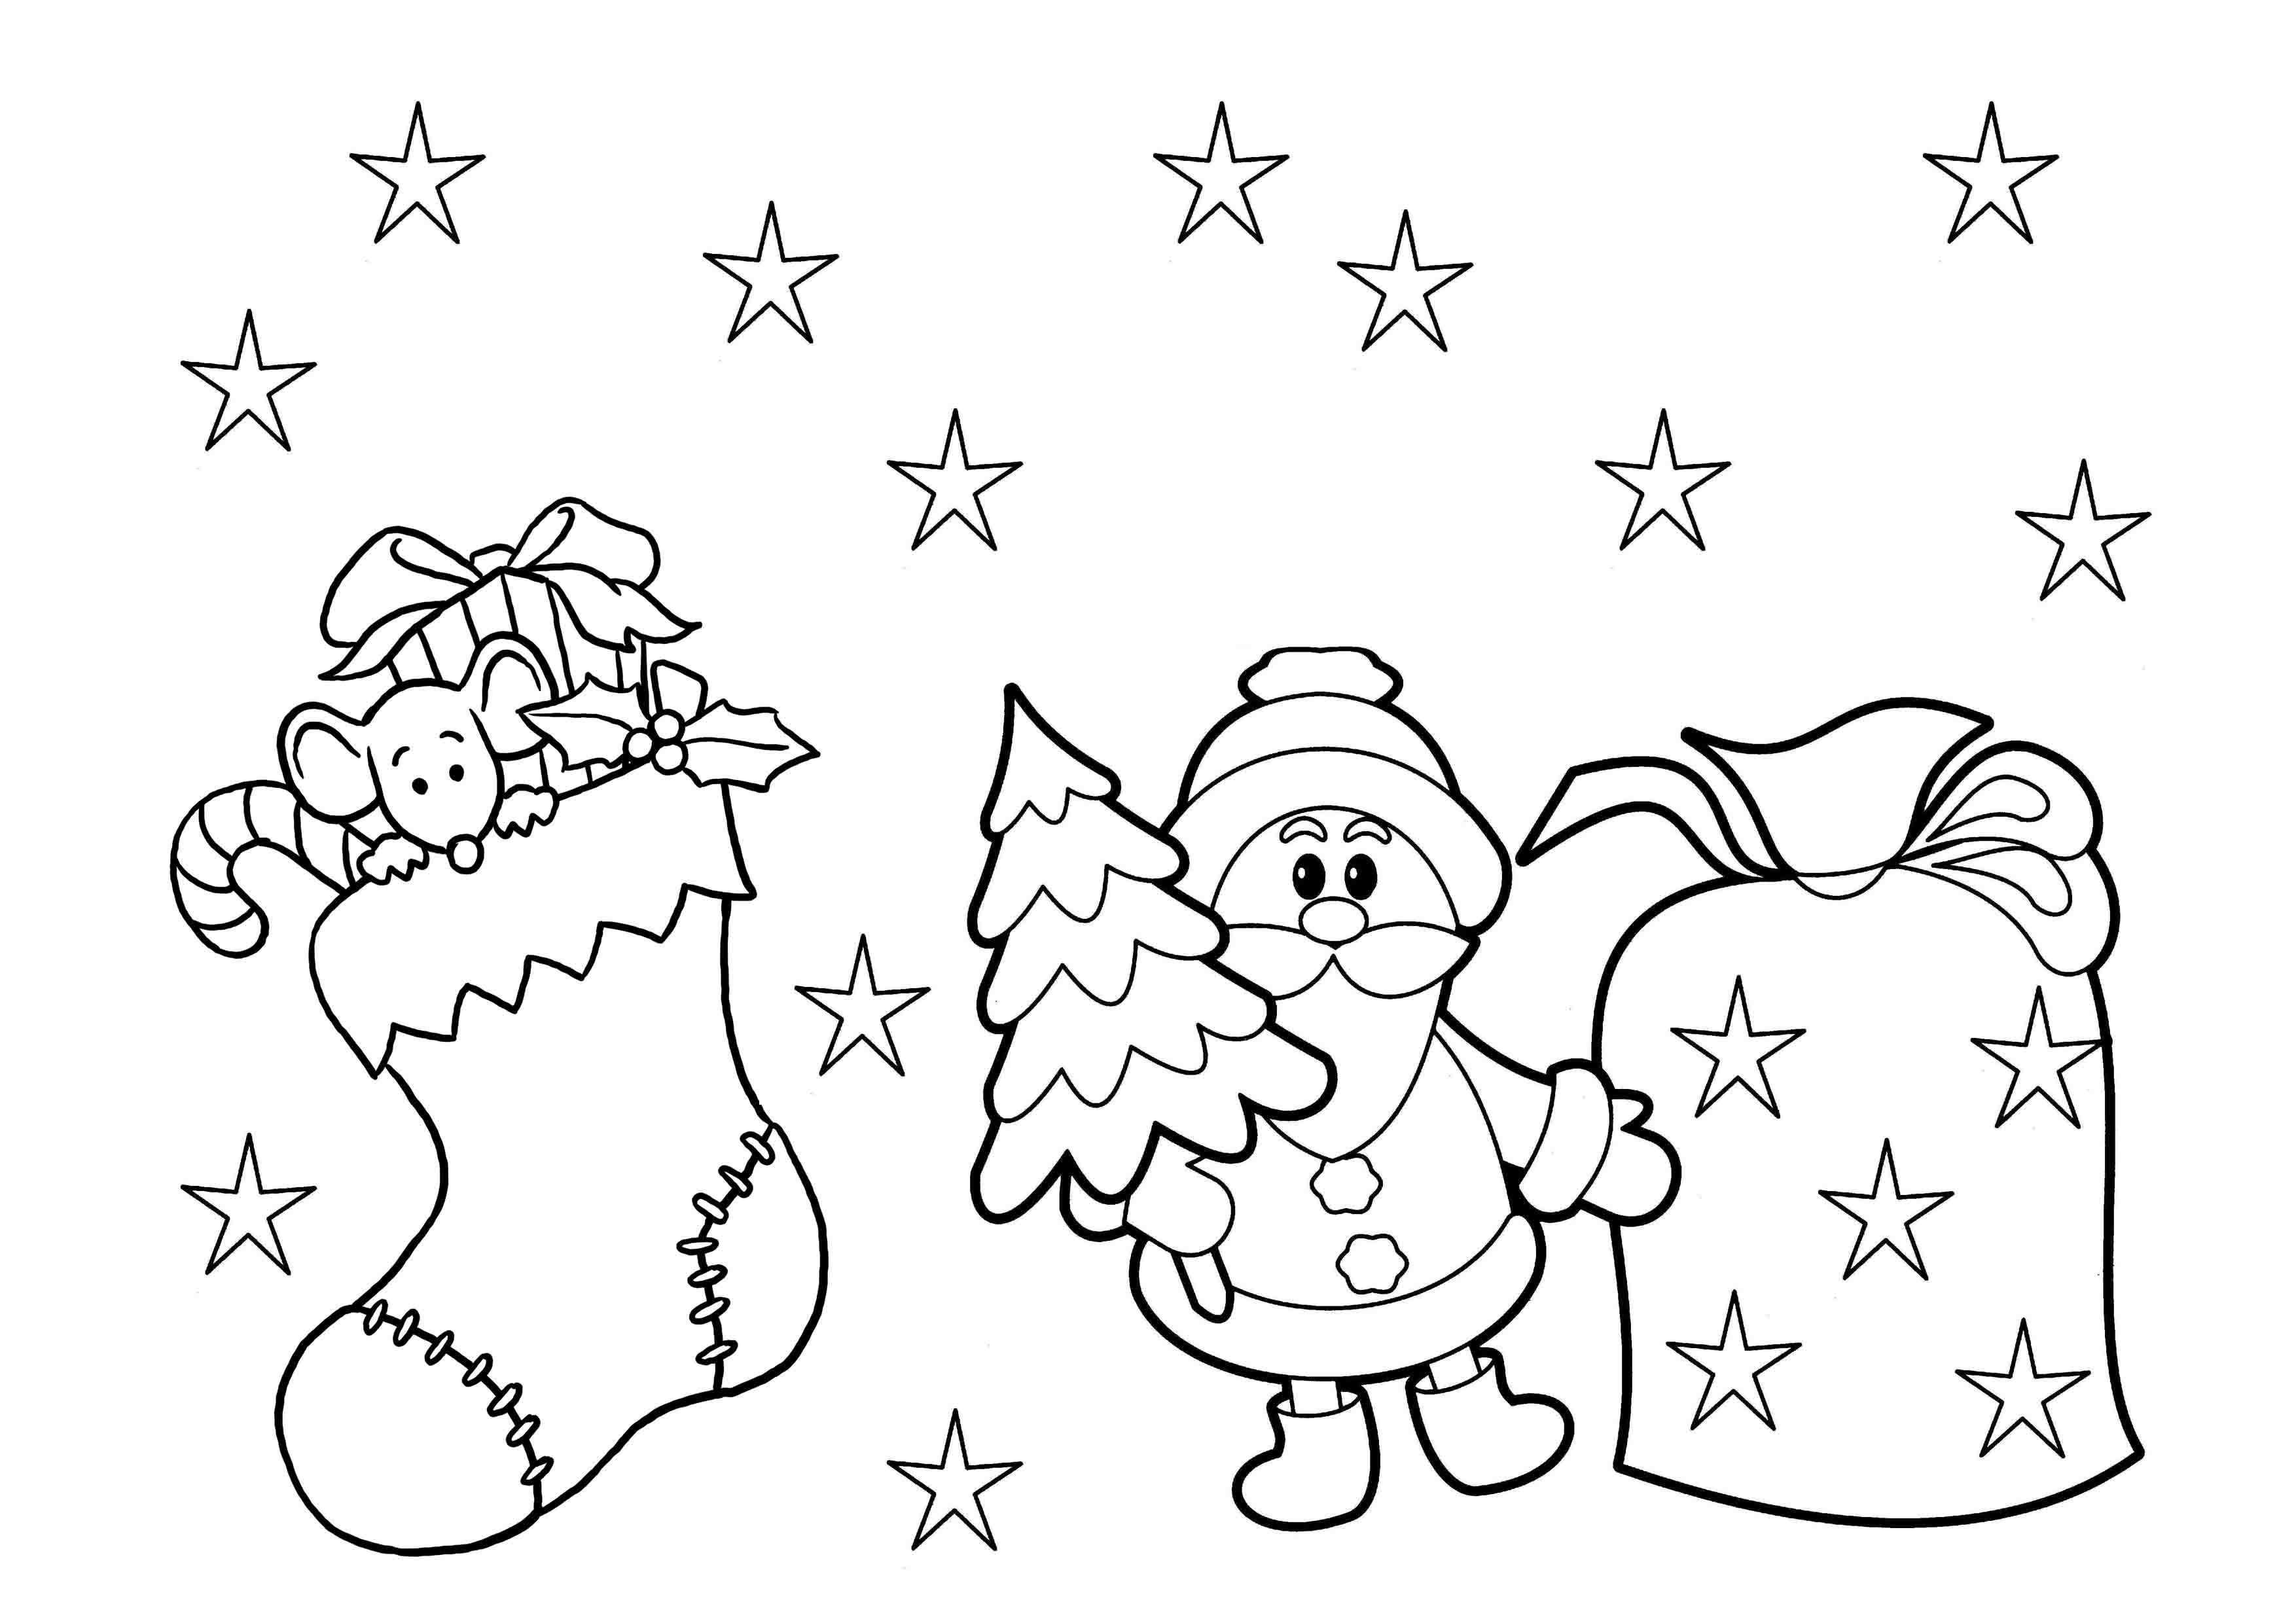 Print &amp;amp; Download - Printable Christmas Coloring Pages For Kids - Free Printable Christmas Coloring Pages For Kids